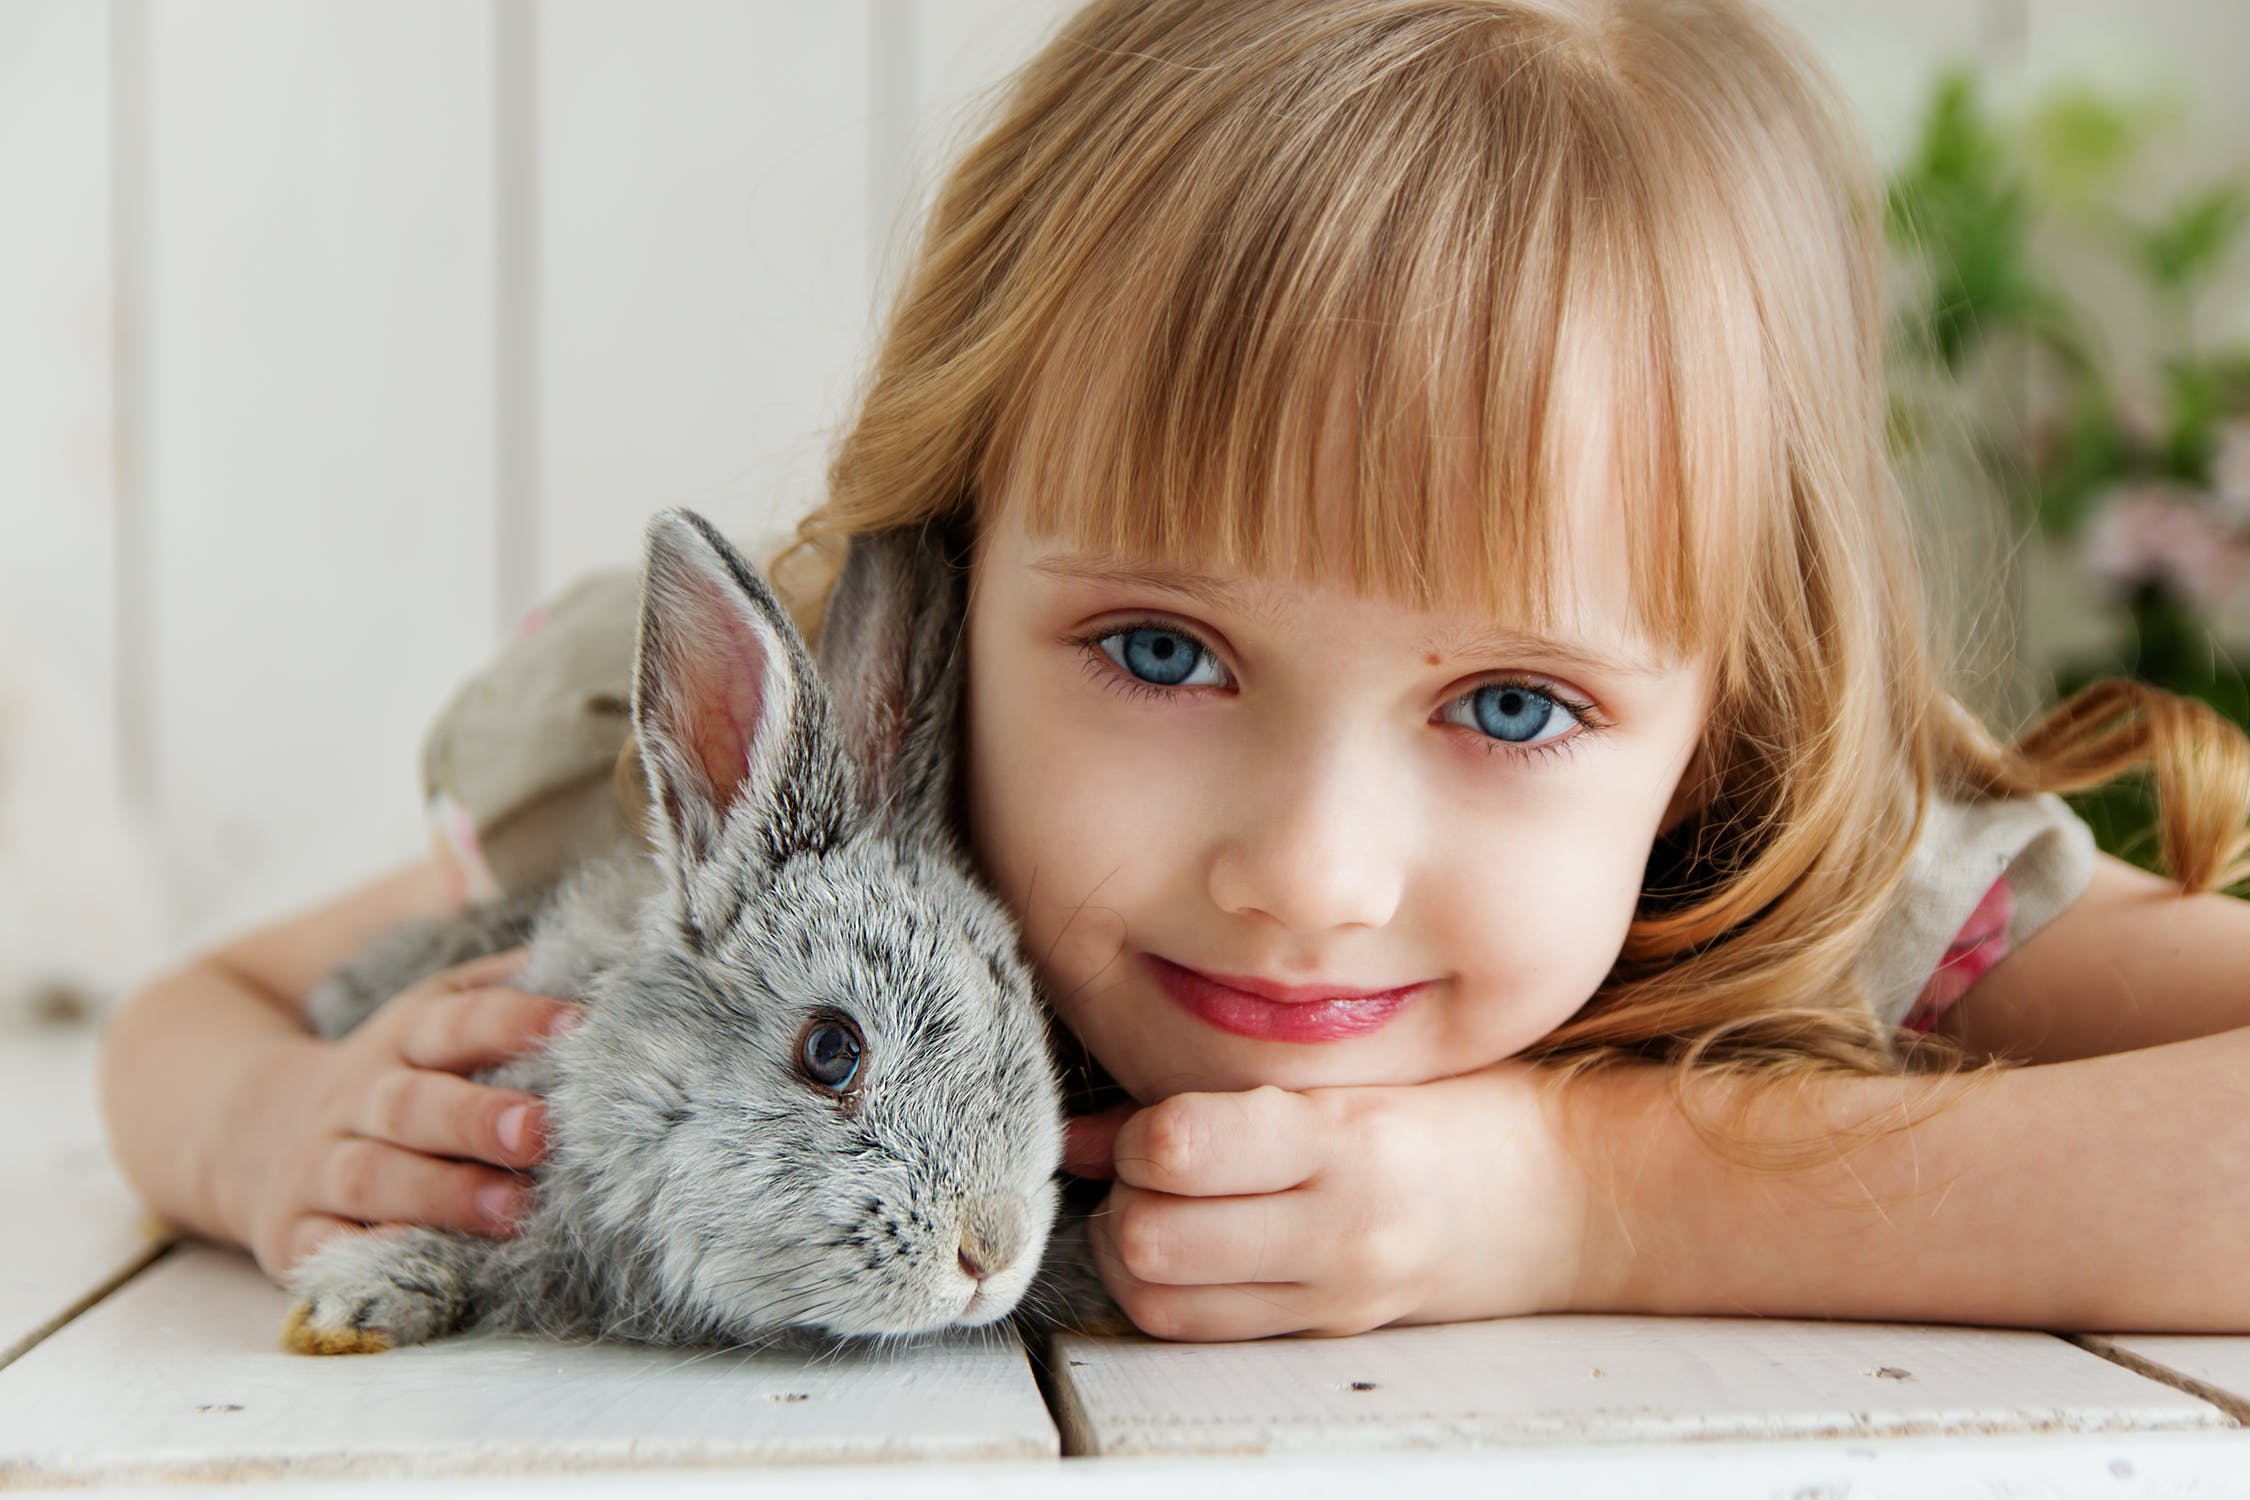 Binatang bisa membantu anak untuk lebih mengenal lingkungan (Foto: pexels/Anastasiya Gepp)